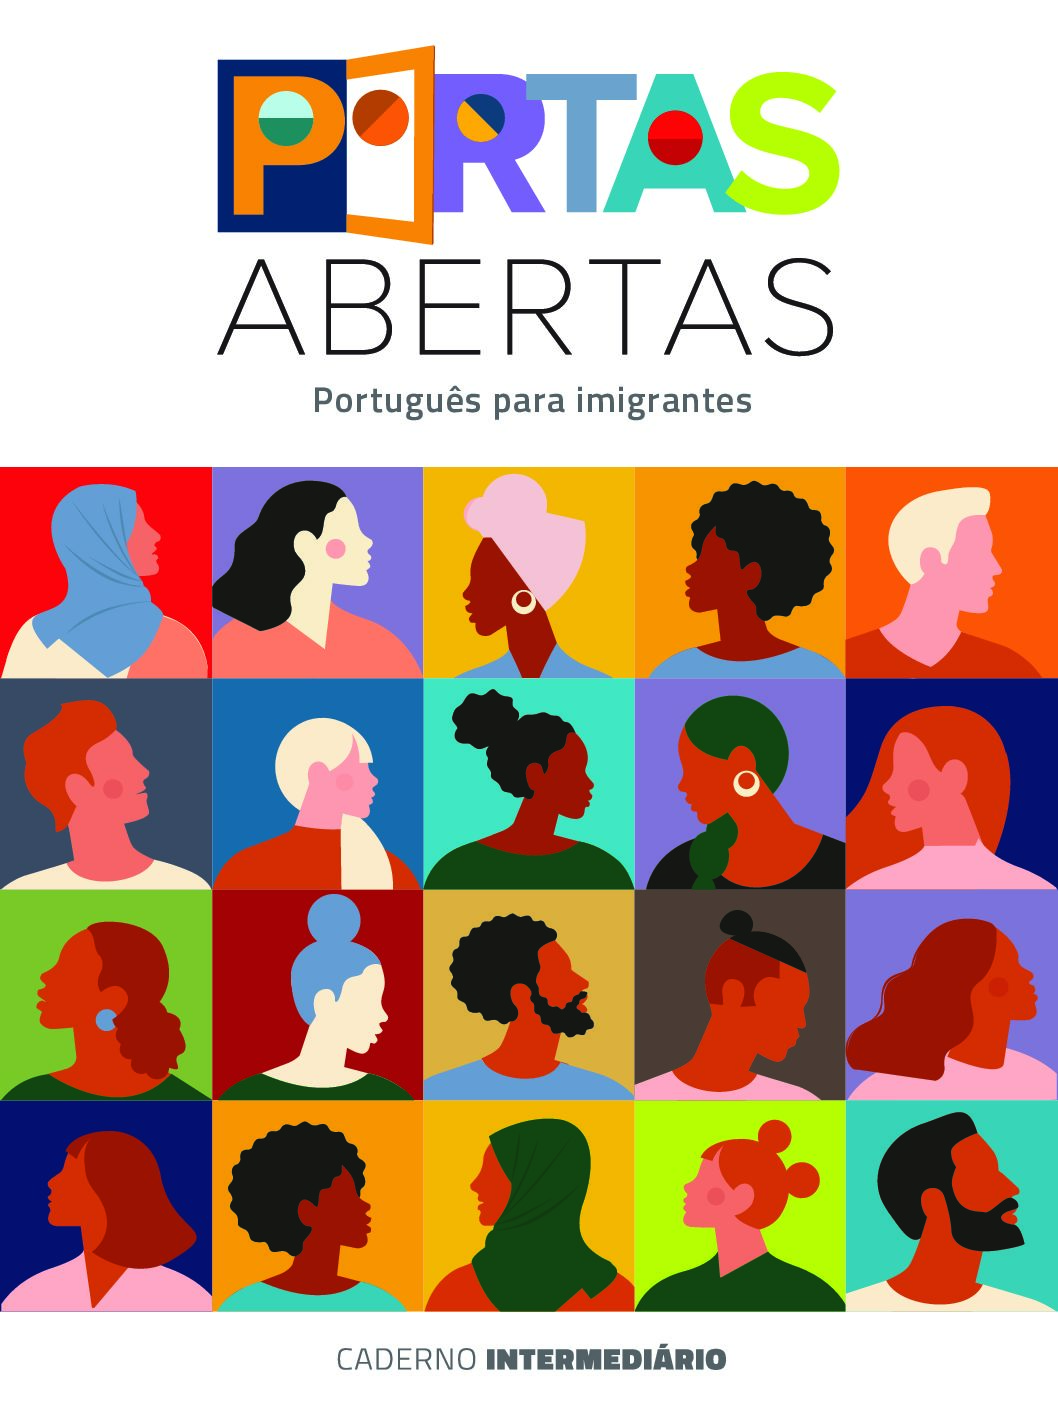 Coleção Portas Abertas. Publicação para profissionais da Educação envolvidos com o ensino de Português para imigrantes.